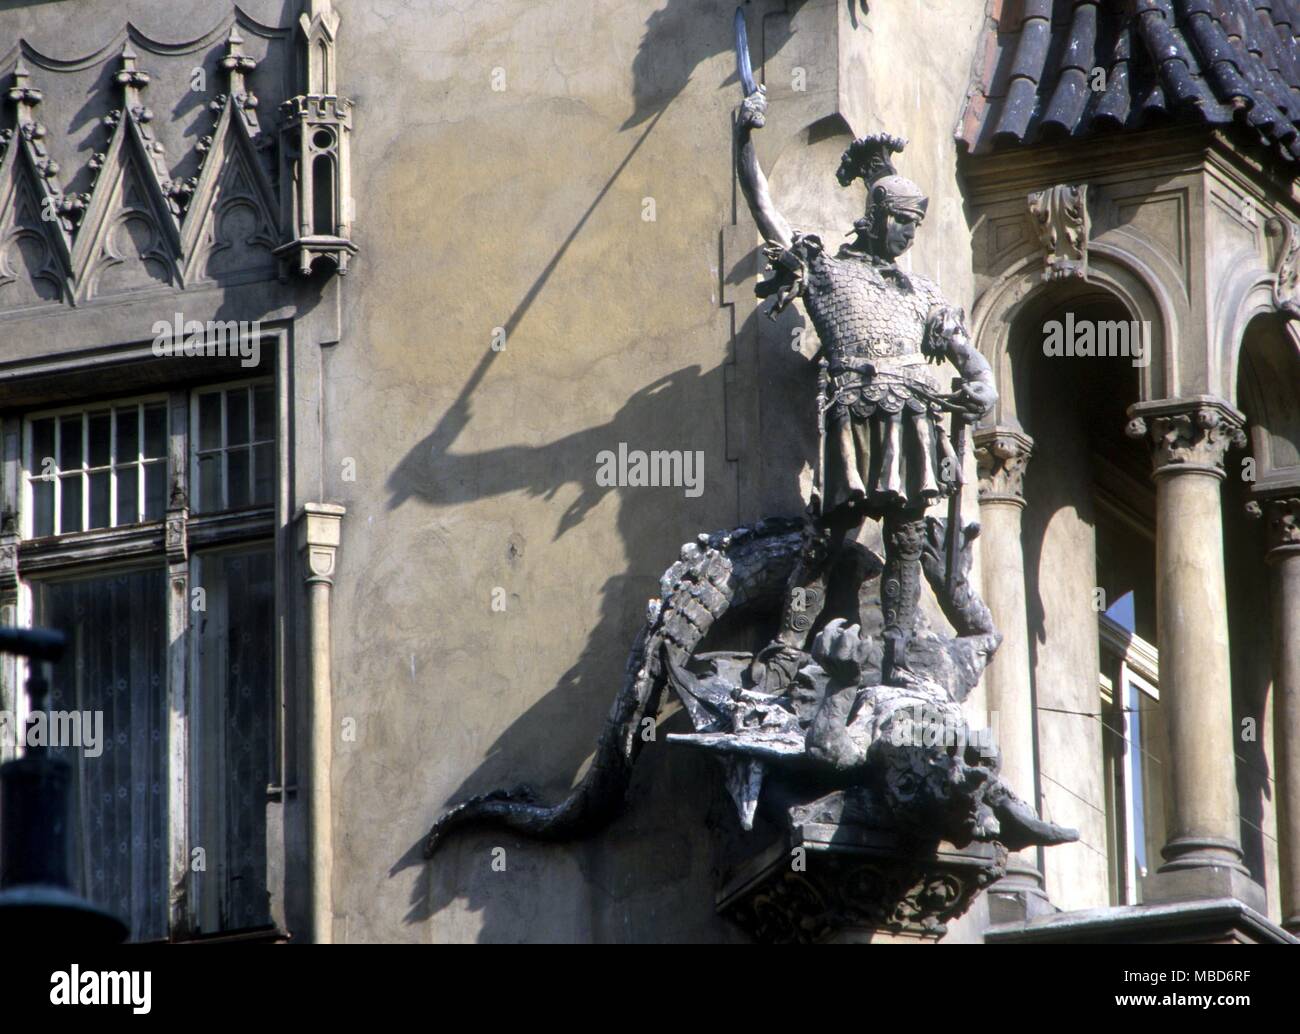 DRAGON-Knight Tötung Dragon - vielleicht St. George und der Drache. Dekorative Skulptur auf der Fassade - Ecke eines Hauses in Prag in der Nähe der Altstadt. Stockfoto